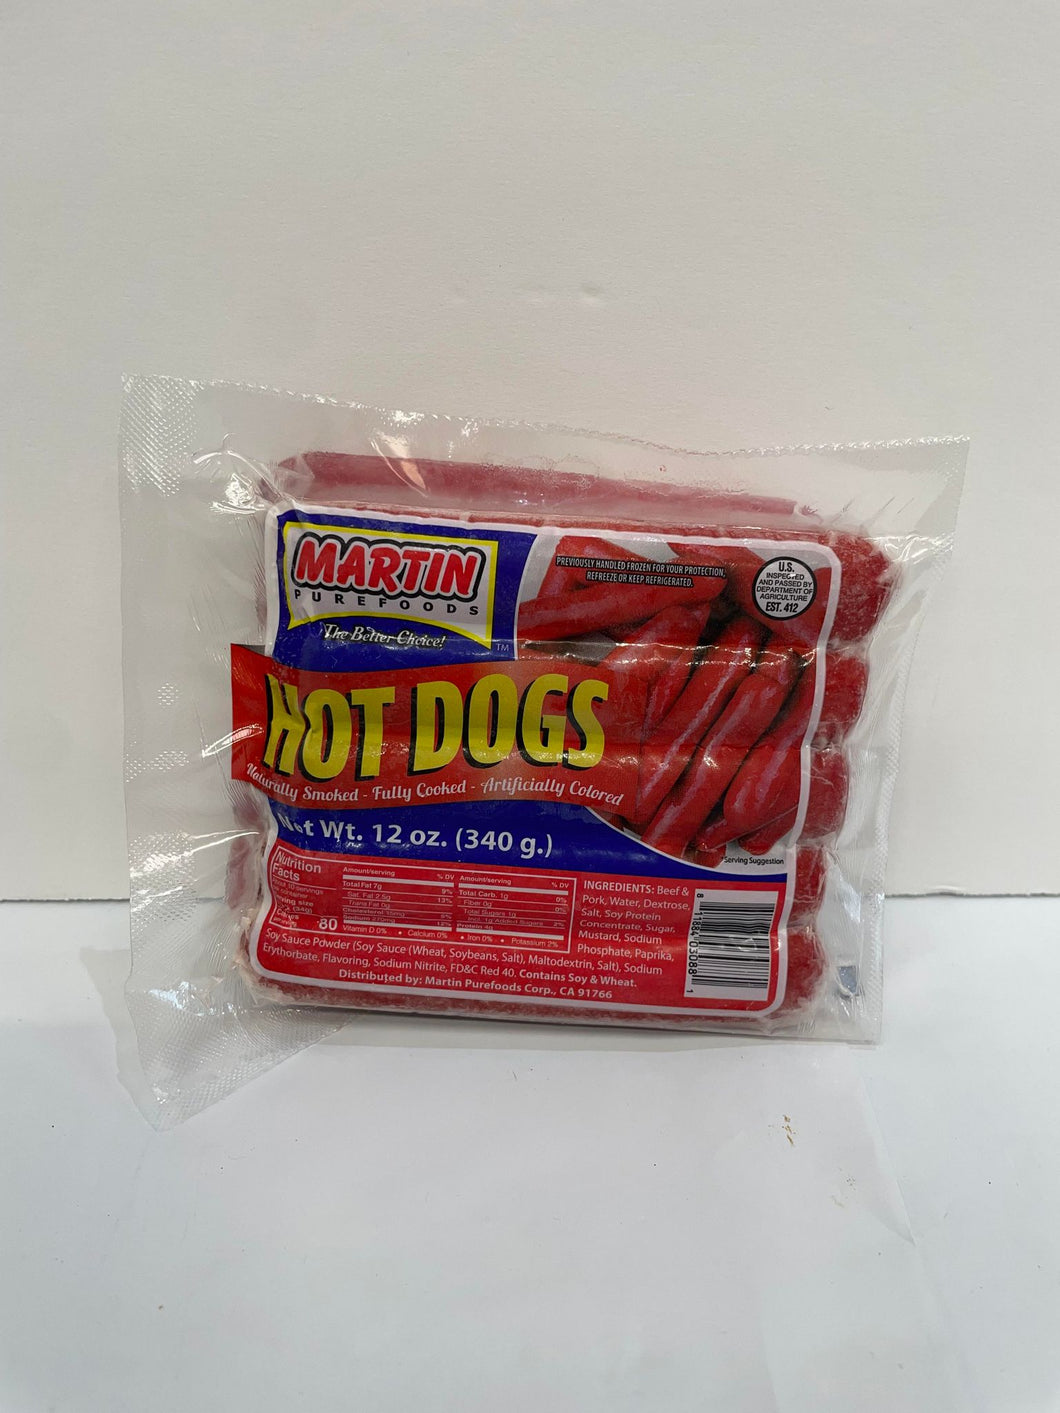 40 tipo de hot dog ao redor do mundo. O Brazil Dog não tem pure